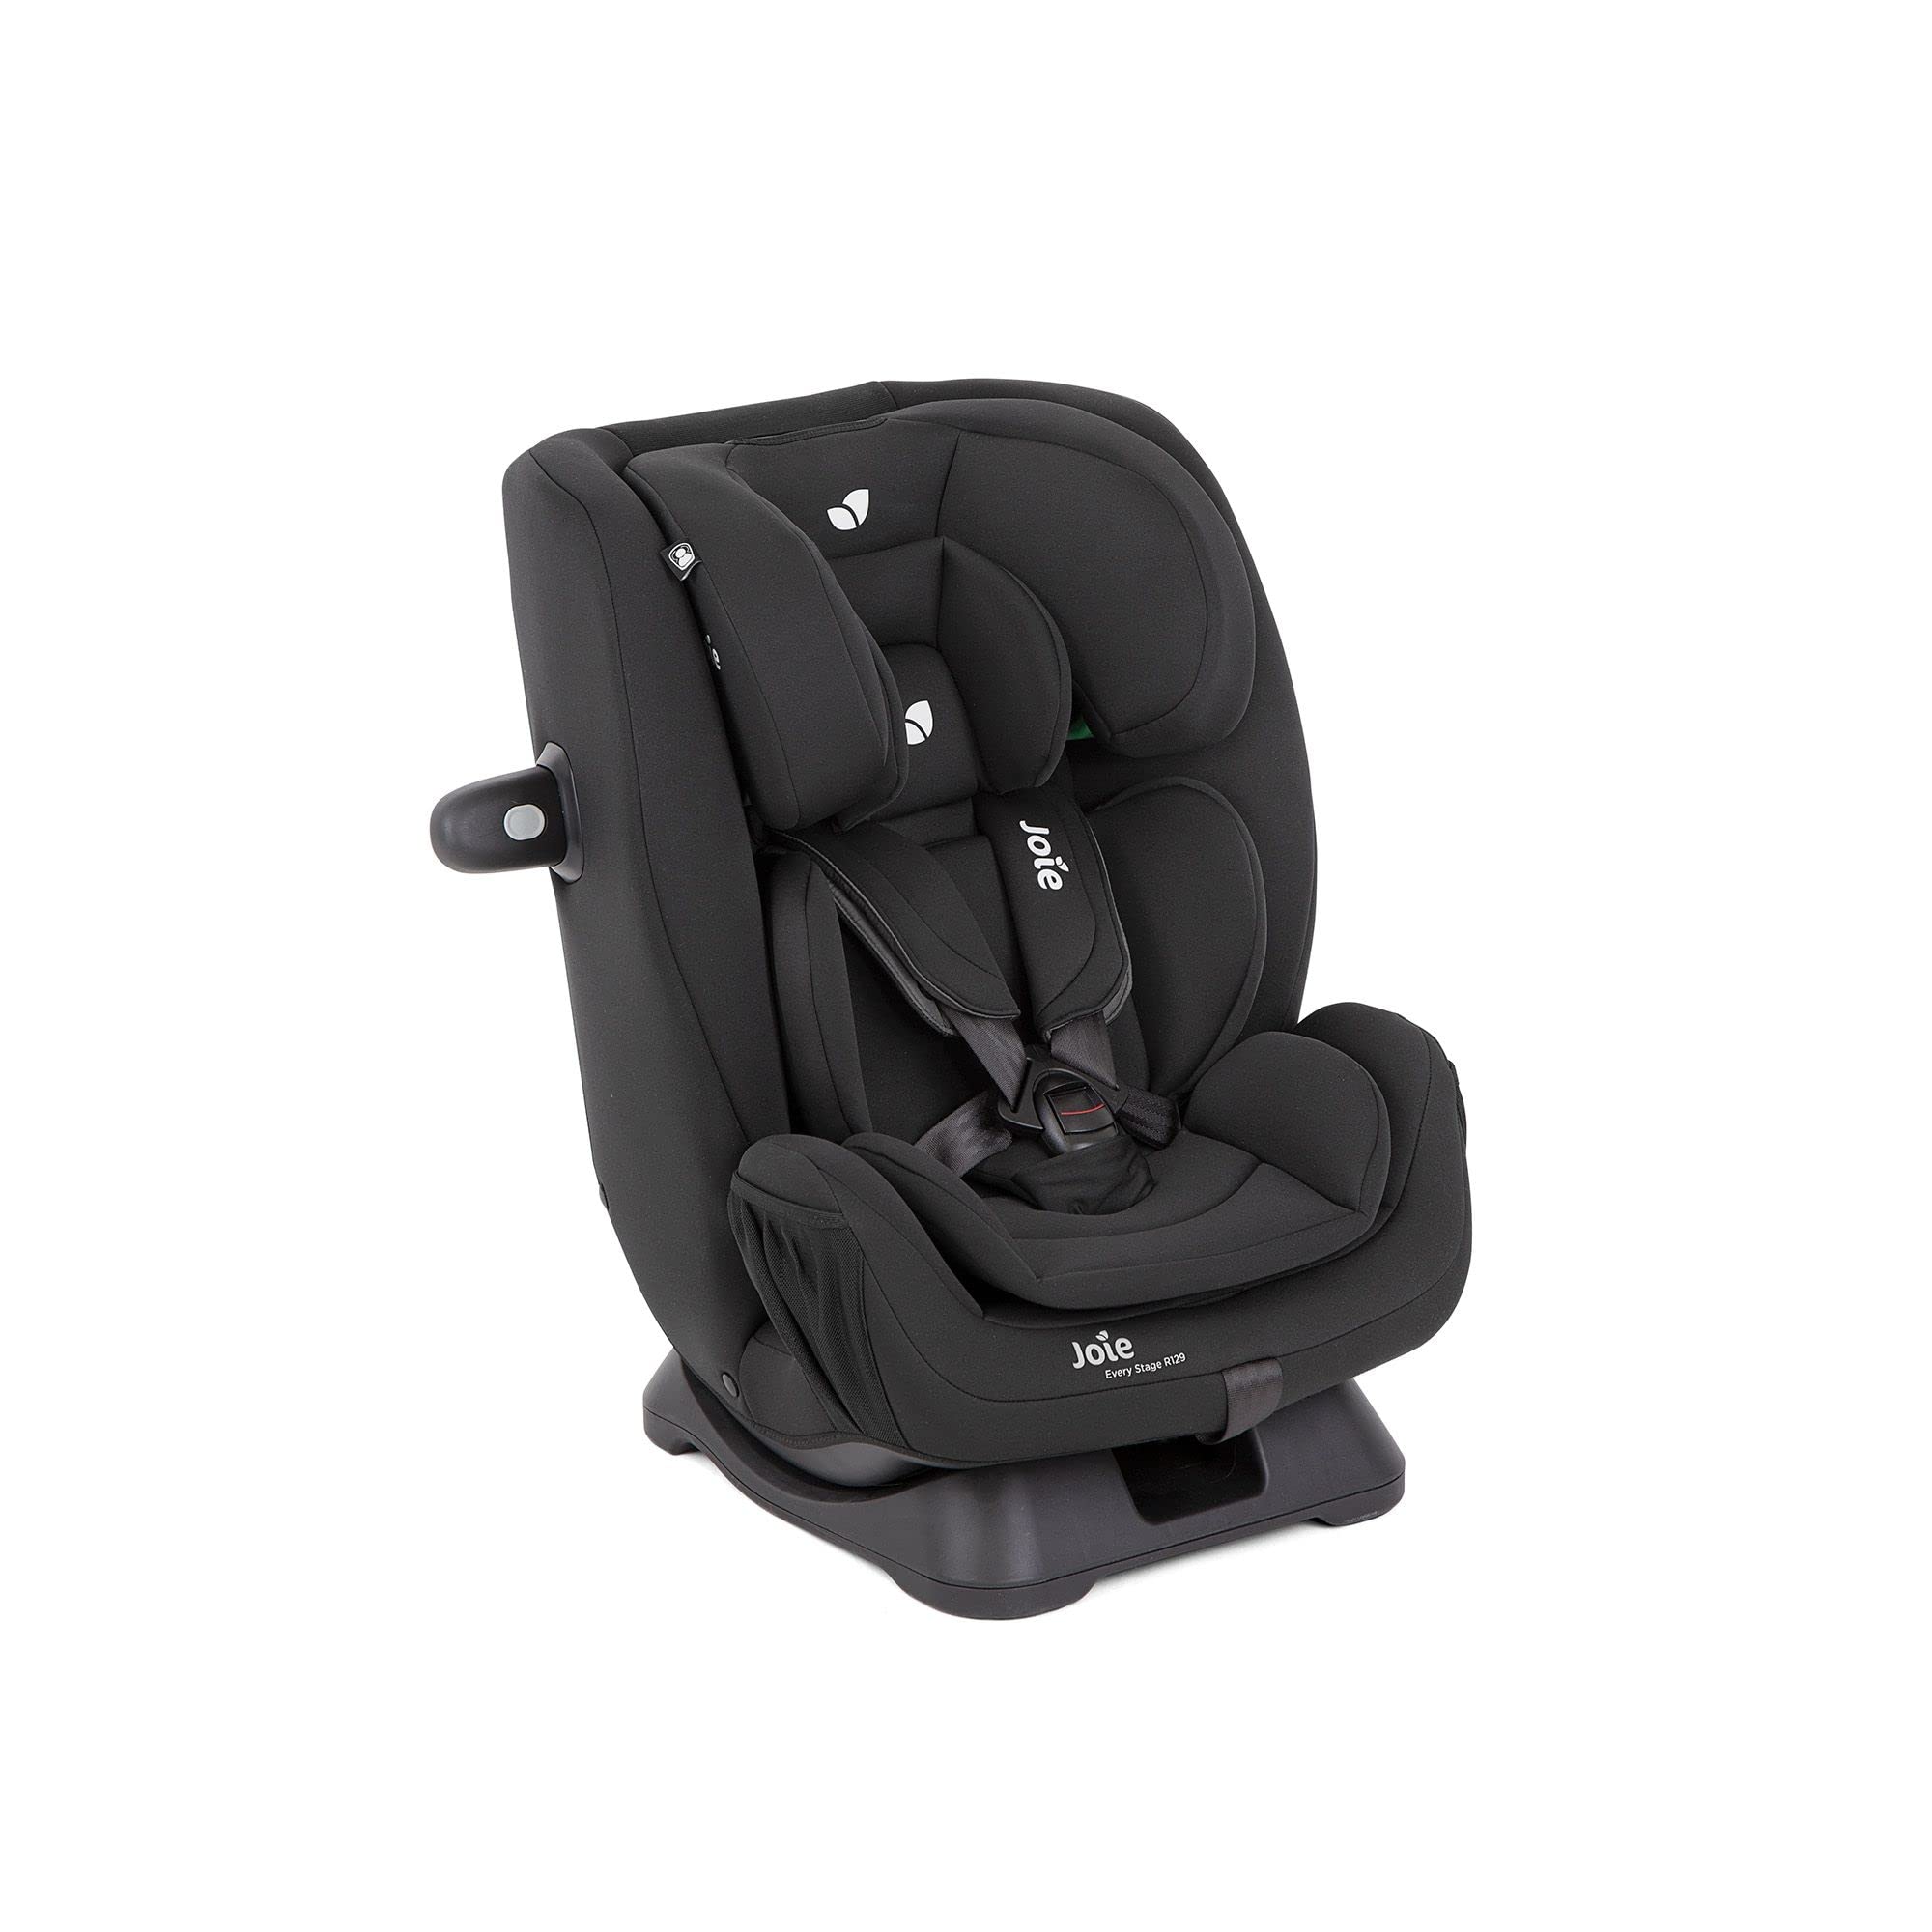 Joie Sitzerhöhungen Reboarder-Kindersitz Spin 360 Gti i-Size ab Geburt - 4 Jahre (40-105 cm) mit Isofix-Basis - Shale